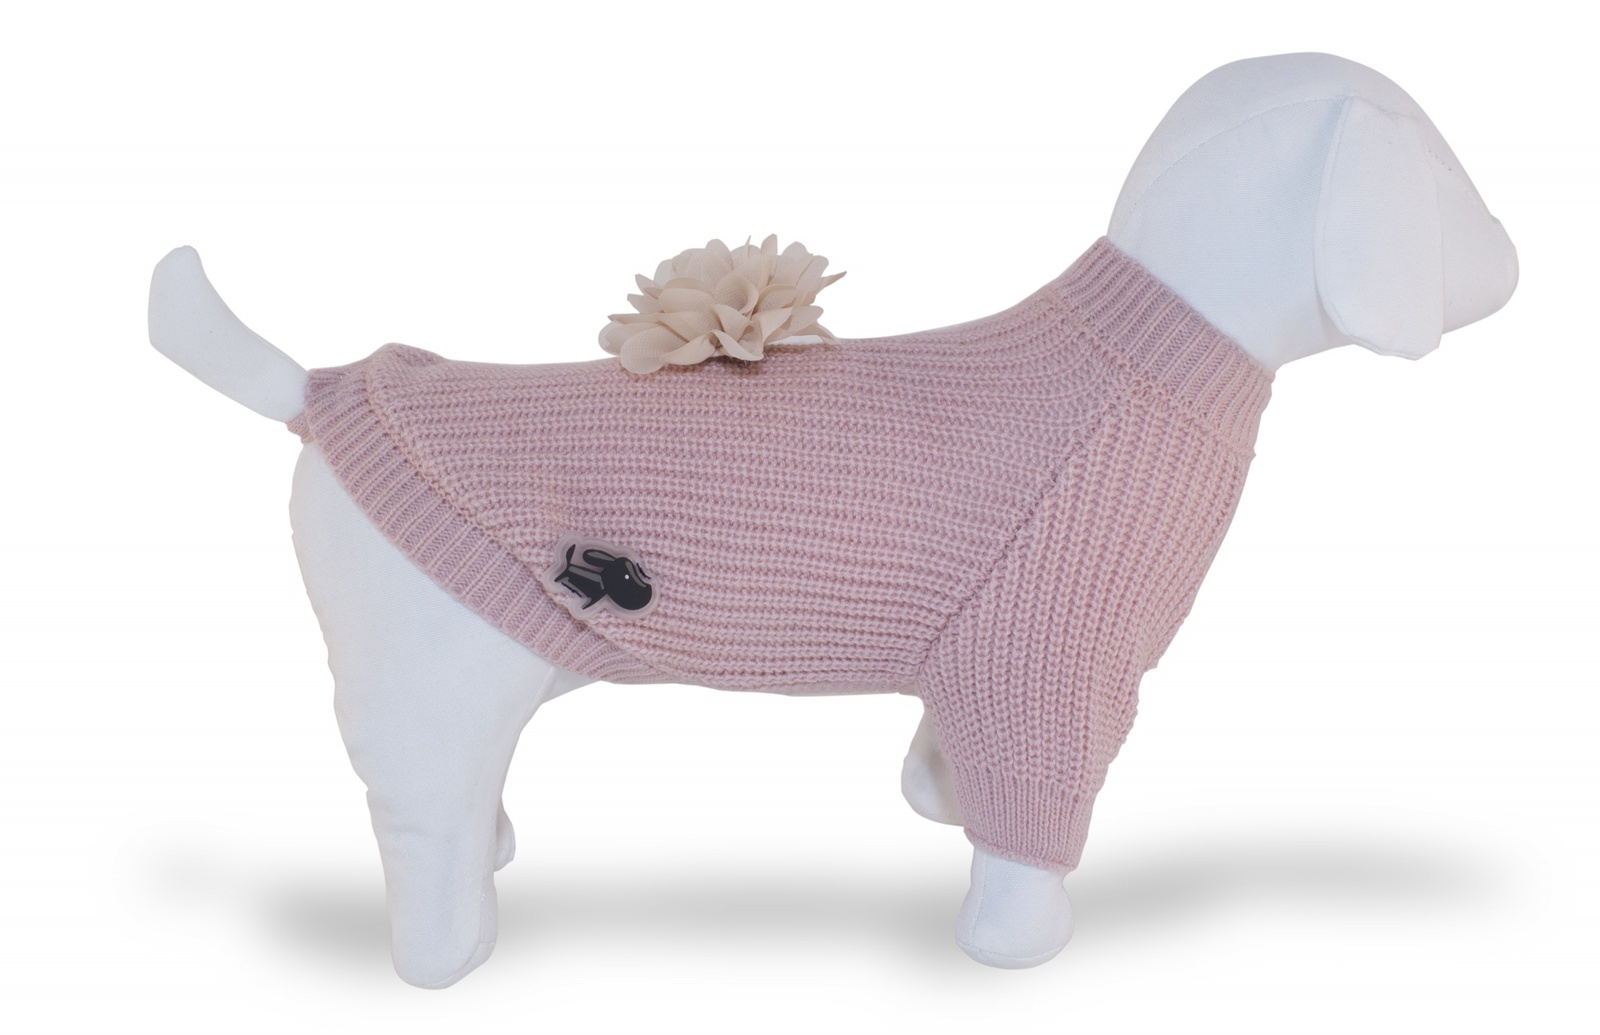 Ferribiella одежда Ferribiella одежда свитер Дольче Вита, розовый (20 см) ferribiella одежда ferribiella одежда свитер дольче вита розовый 36 см